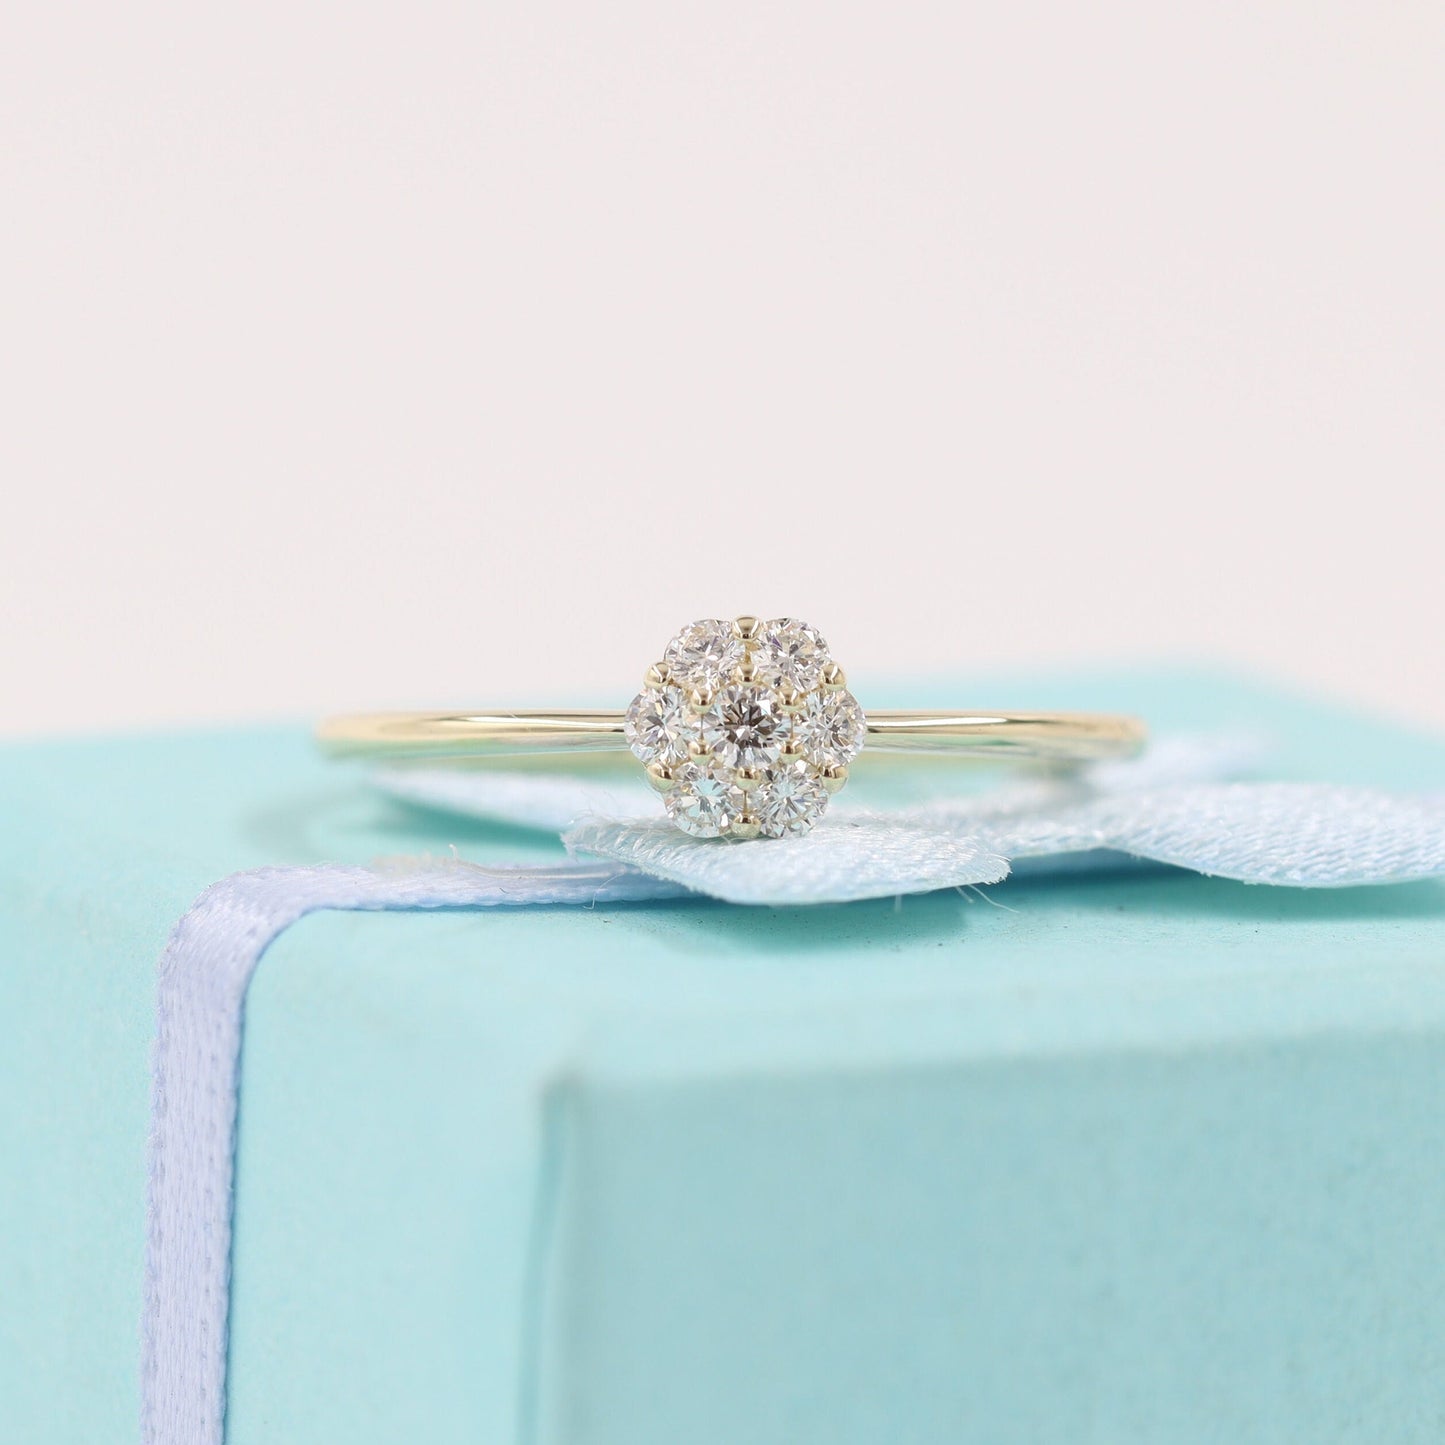 Dainty Flower Diamond Ring/14K gold Flower Natural Diamond Wedding Ring/Engagement Ring/Anniversary Ring/birthday gift/Gift for her